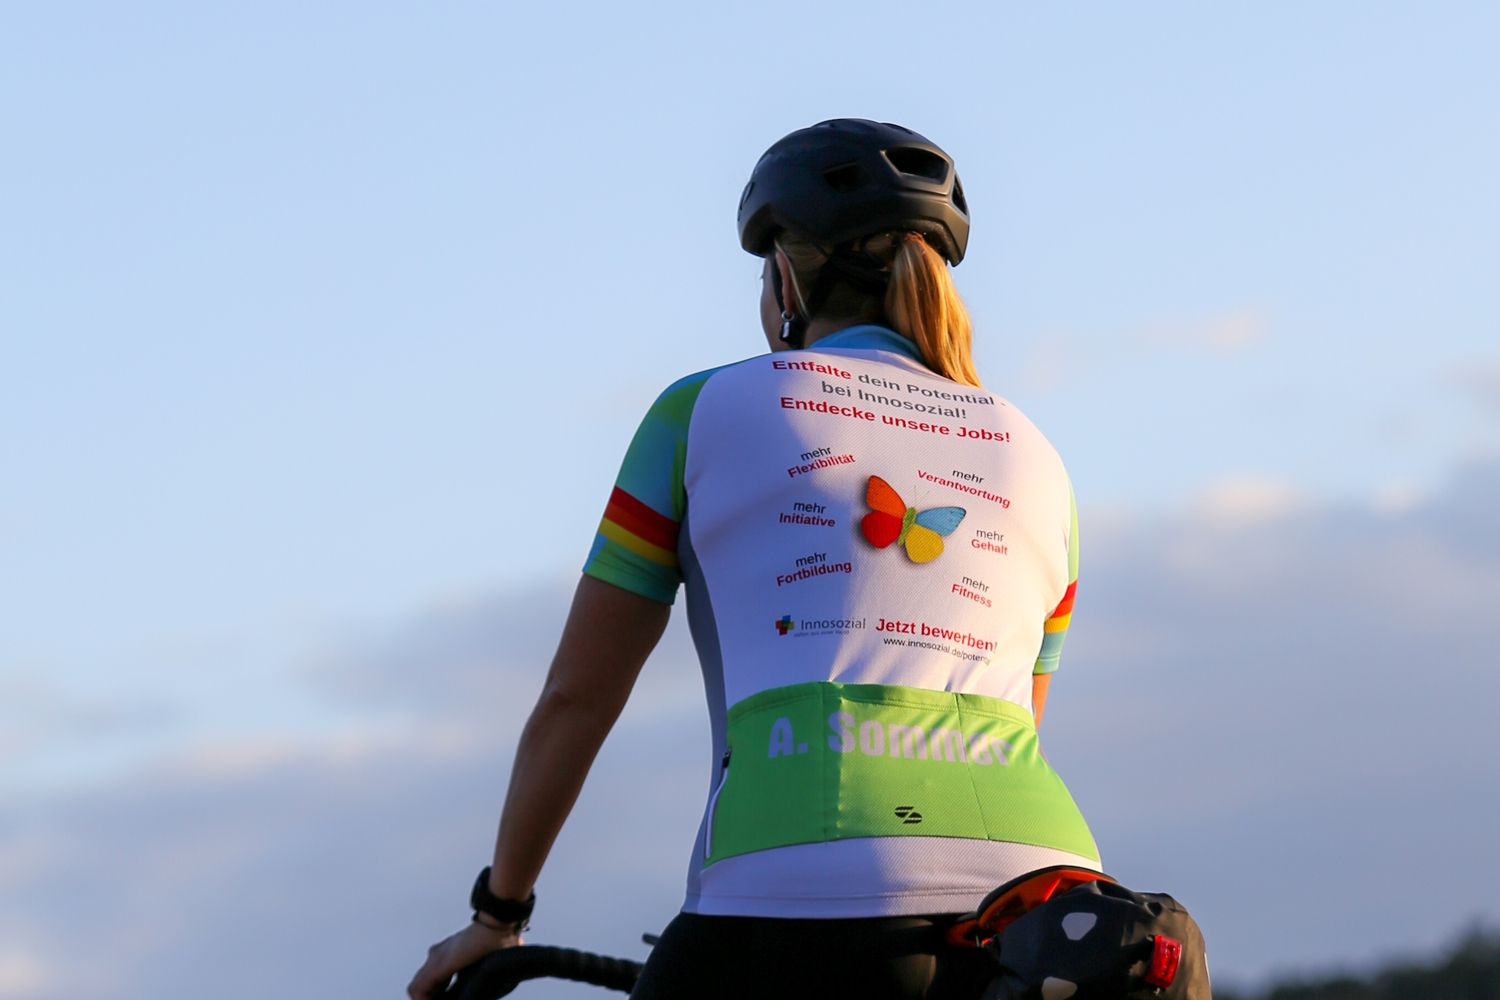 Bild zeigt: Eine Radfahrerin mit Helm von hinten und ihrem bedruckten Trikot